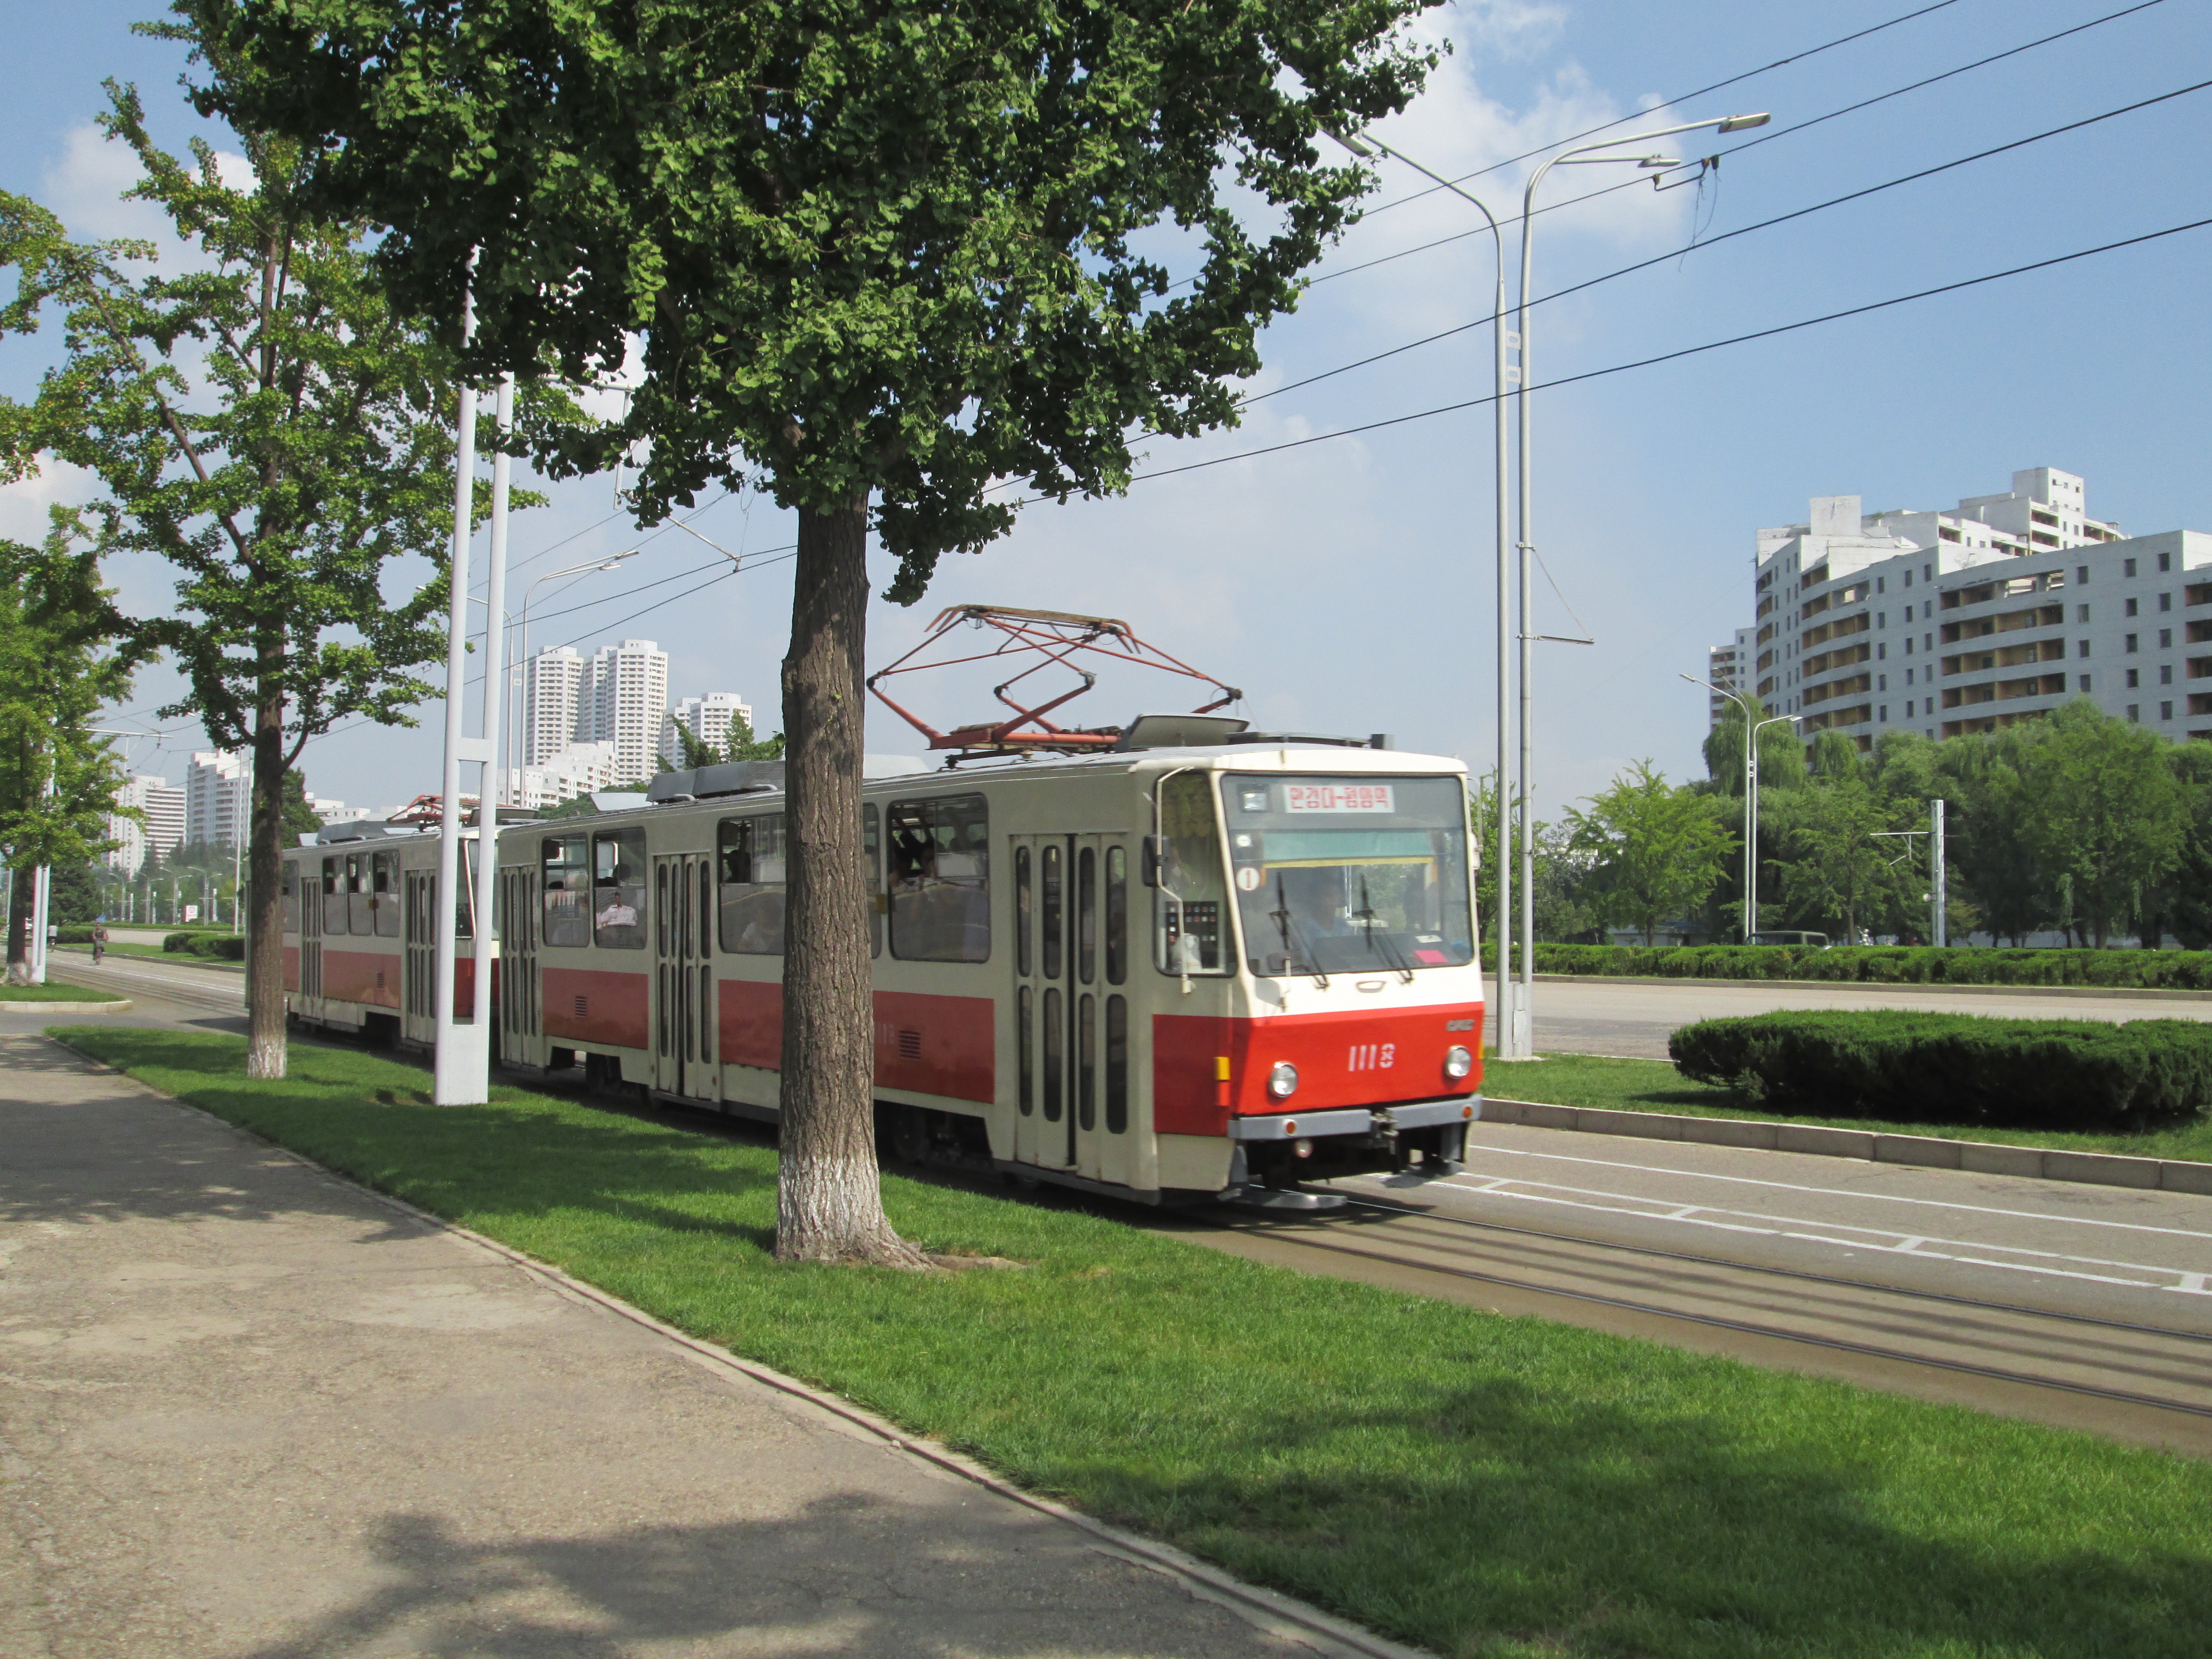 Eine rot-weiße Straßenbahn fährt von links in das Bild. Im Hintergrund sind weiße Wohnbauten und grüne Straßenbepflanzung zu sehen.